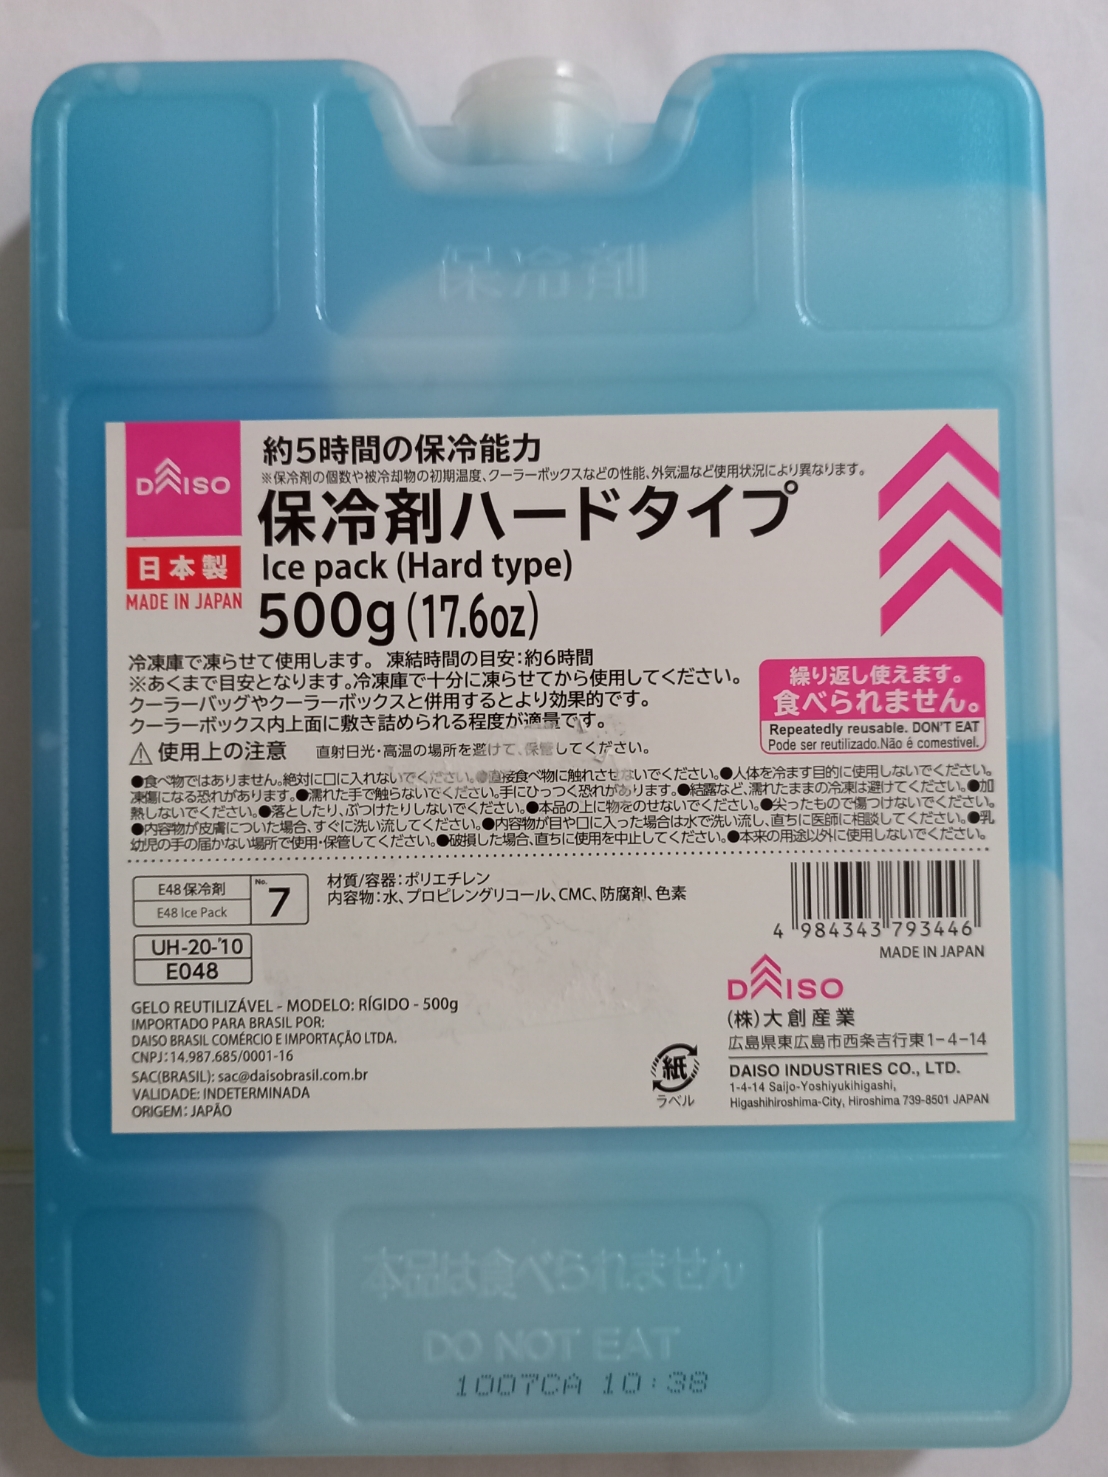 รายละเอียดเพิ่มเติมเกี่ยวกับ กล่องเจลเก็บความเย็น 500 กรัม (Made in Japan)